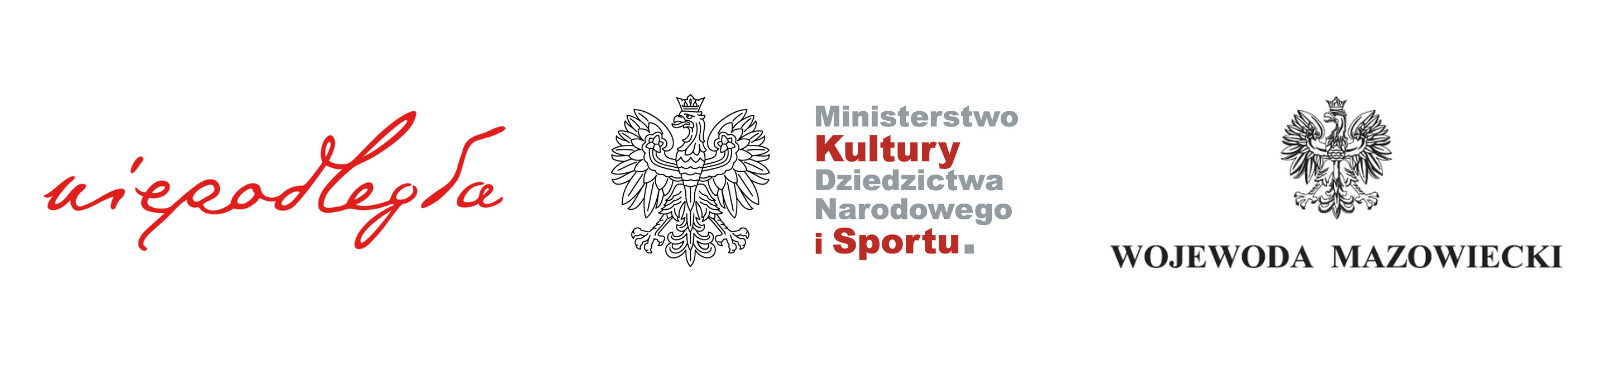 Logotypy Programu Wieloletniego „Niepodległa”, Ministerstwa Kultury, Dziedzictwa Narodowego i Sportu oraz Wojewody Mazowieckiego.